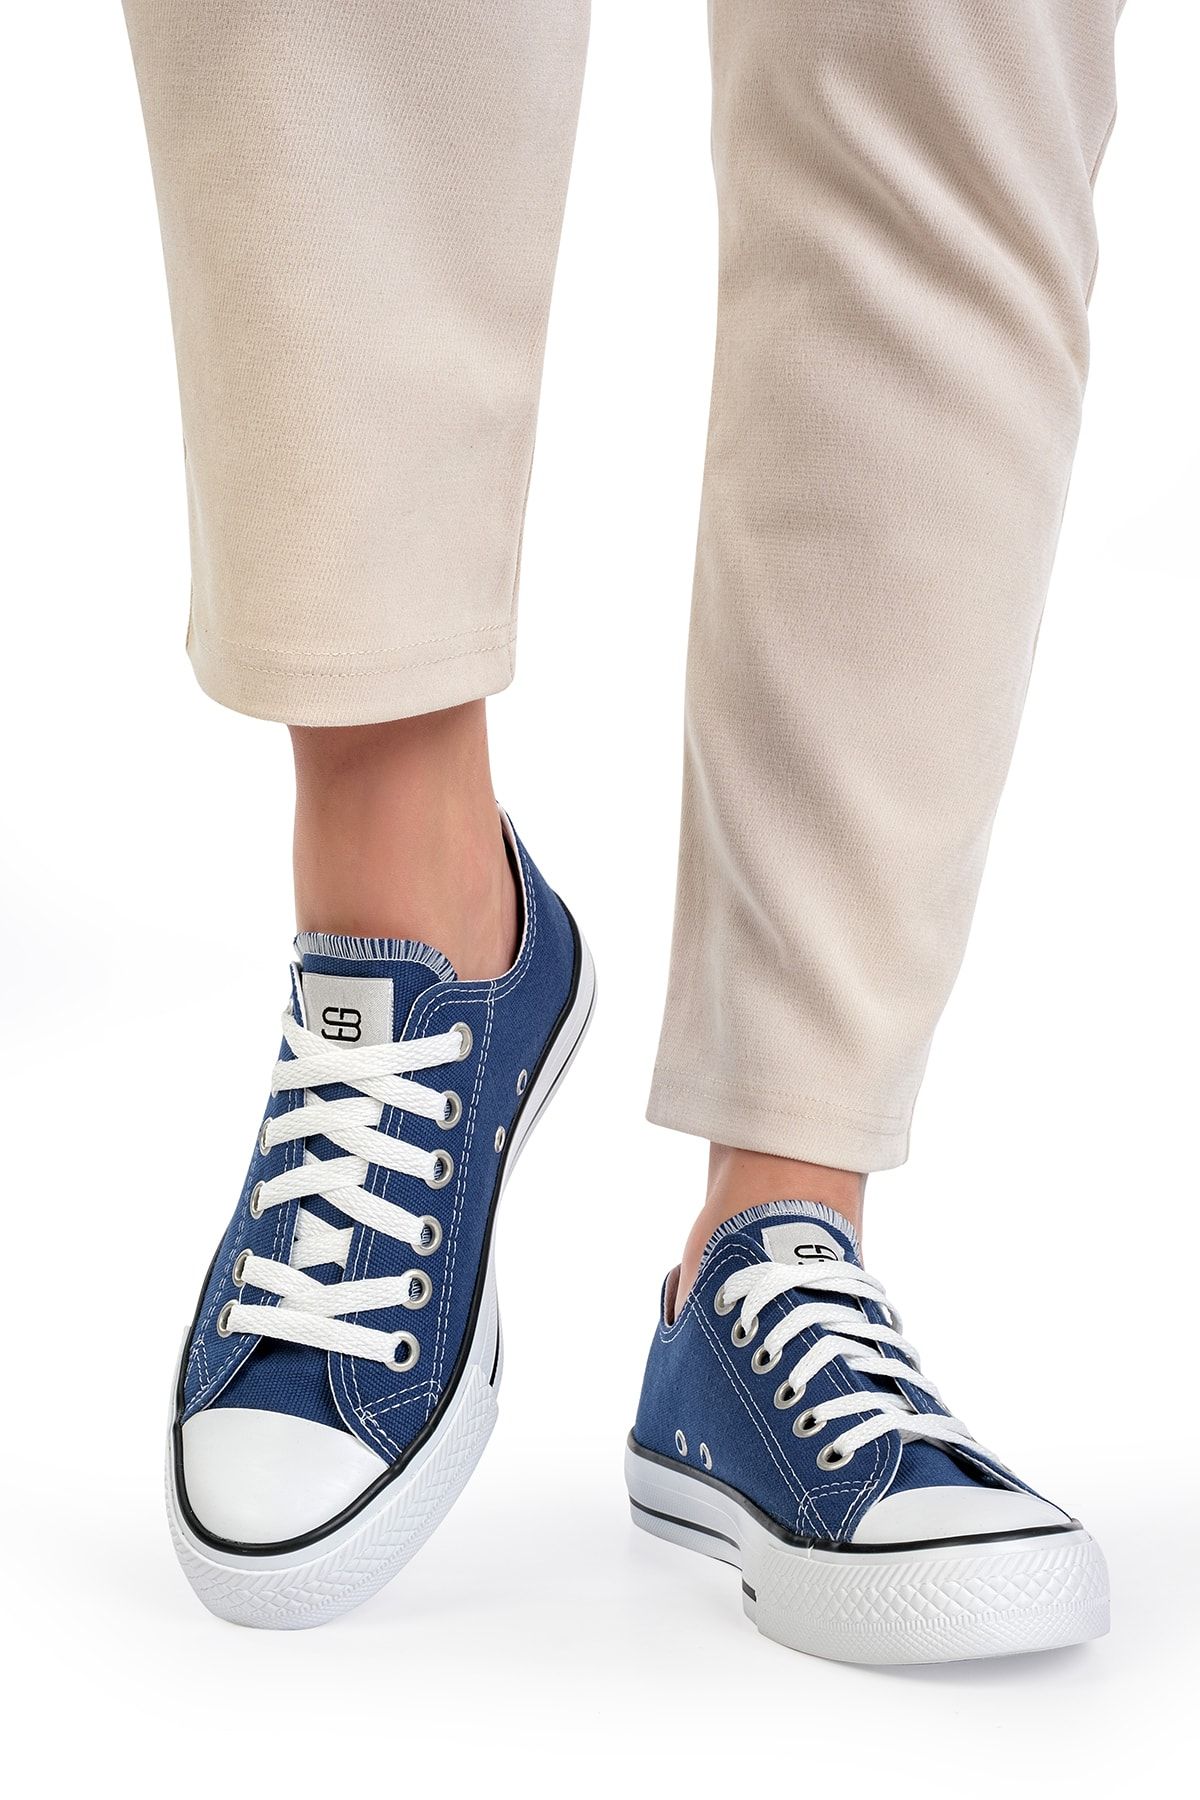 Solo Bag Solo Shoes&bag Unısex Kot Mavi Spor Günlük Ayakkabı